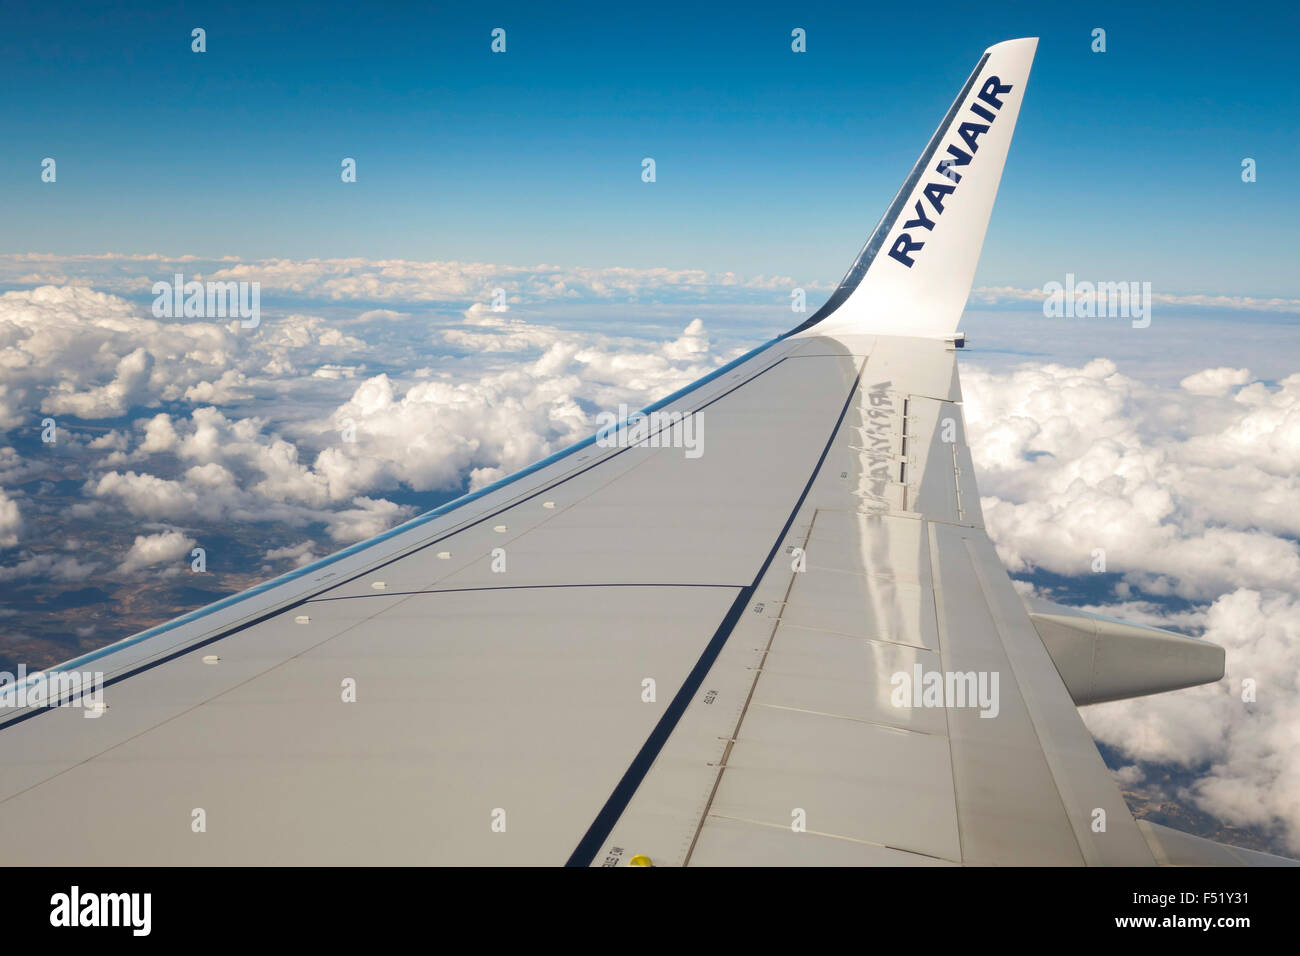 Irlandese Ryanair a basso costo aerei di compagnie aeree, wingtip con logotipo e nuvole dietro. Foto Stock